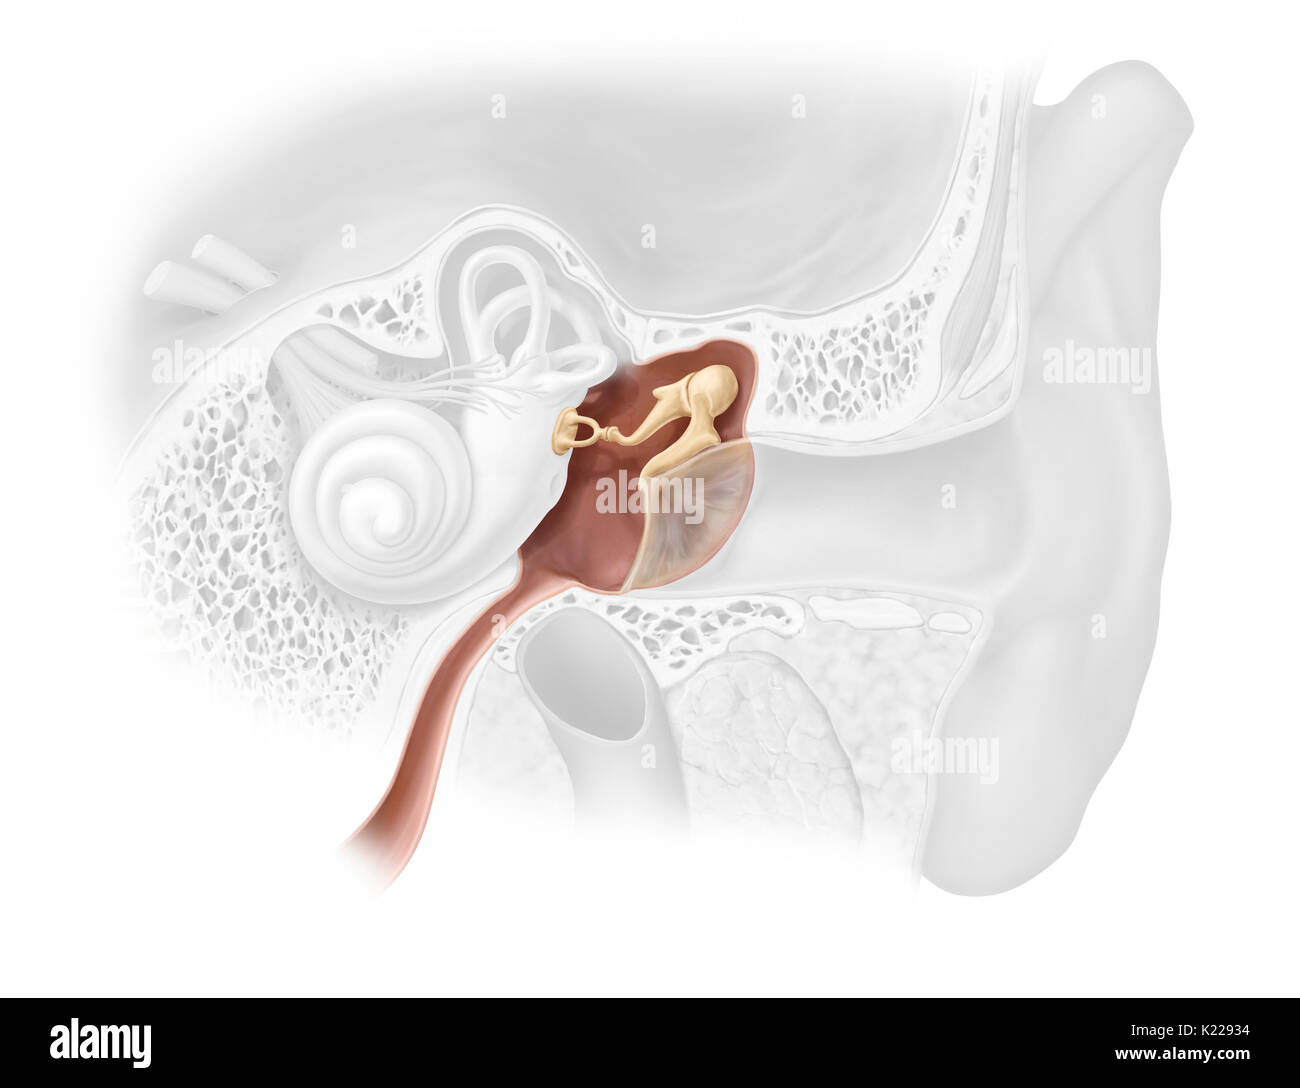 Aria-riempito la cavità scavata dell'osso temporale; esso riceve suoni dall'orecchio esterno, li amplifica attraverso il ossicoli e li trasmette all'orecchio interno. Foto Stock